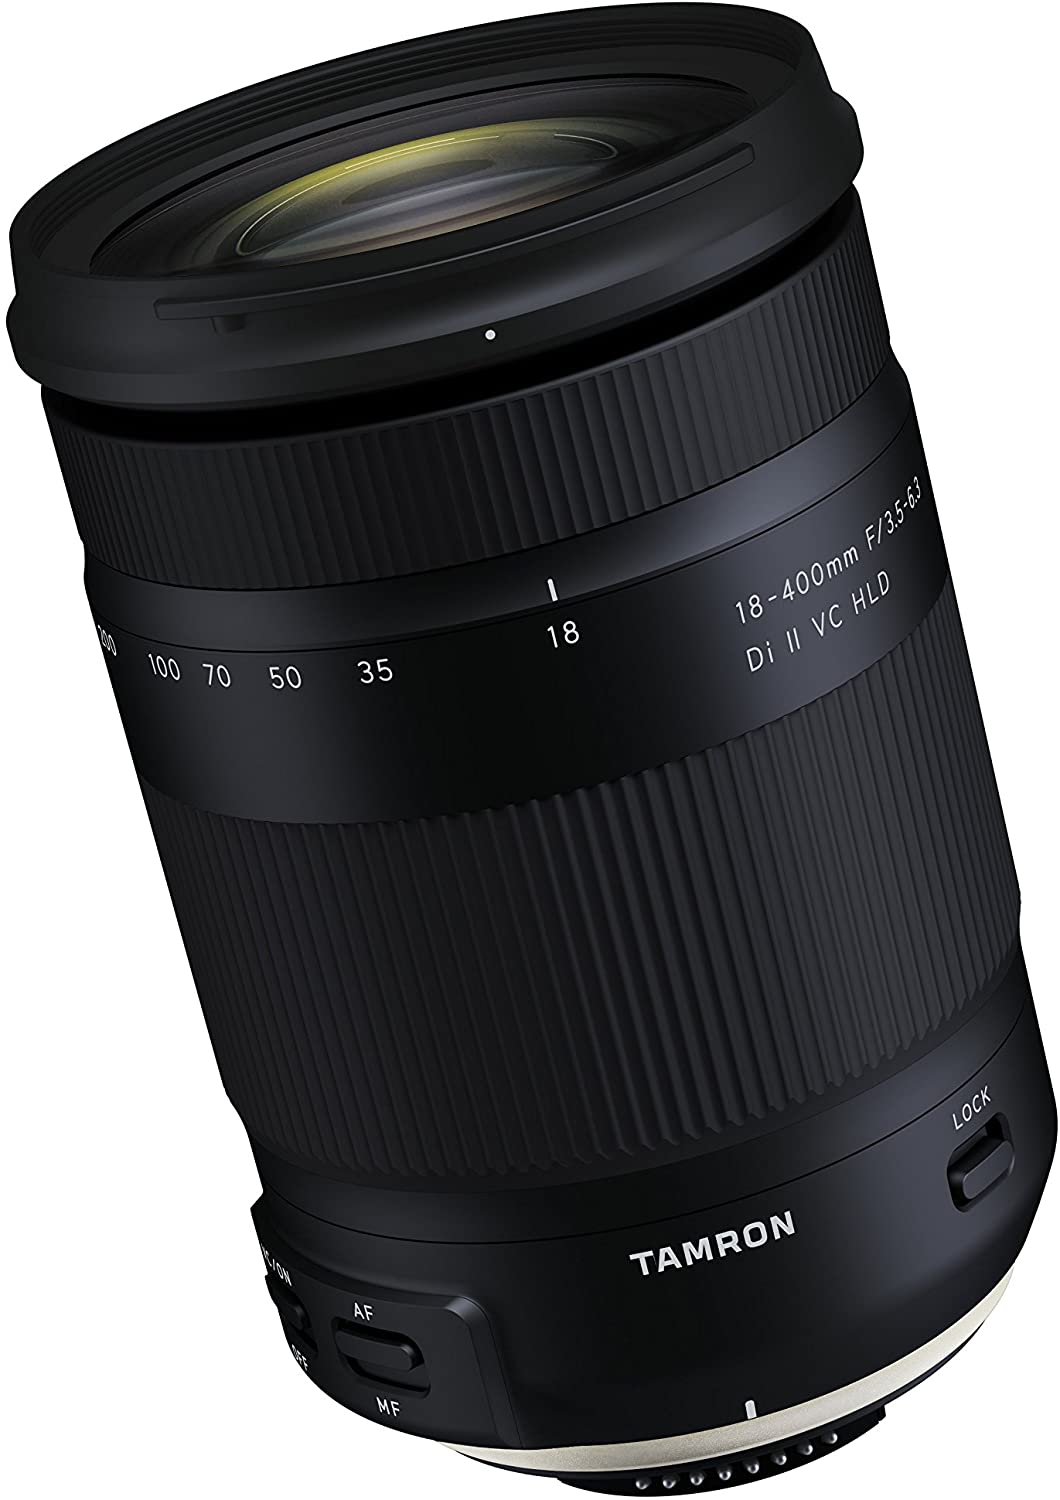 Tamron 18-400 mm